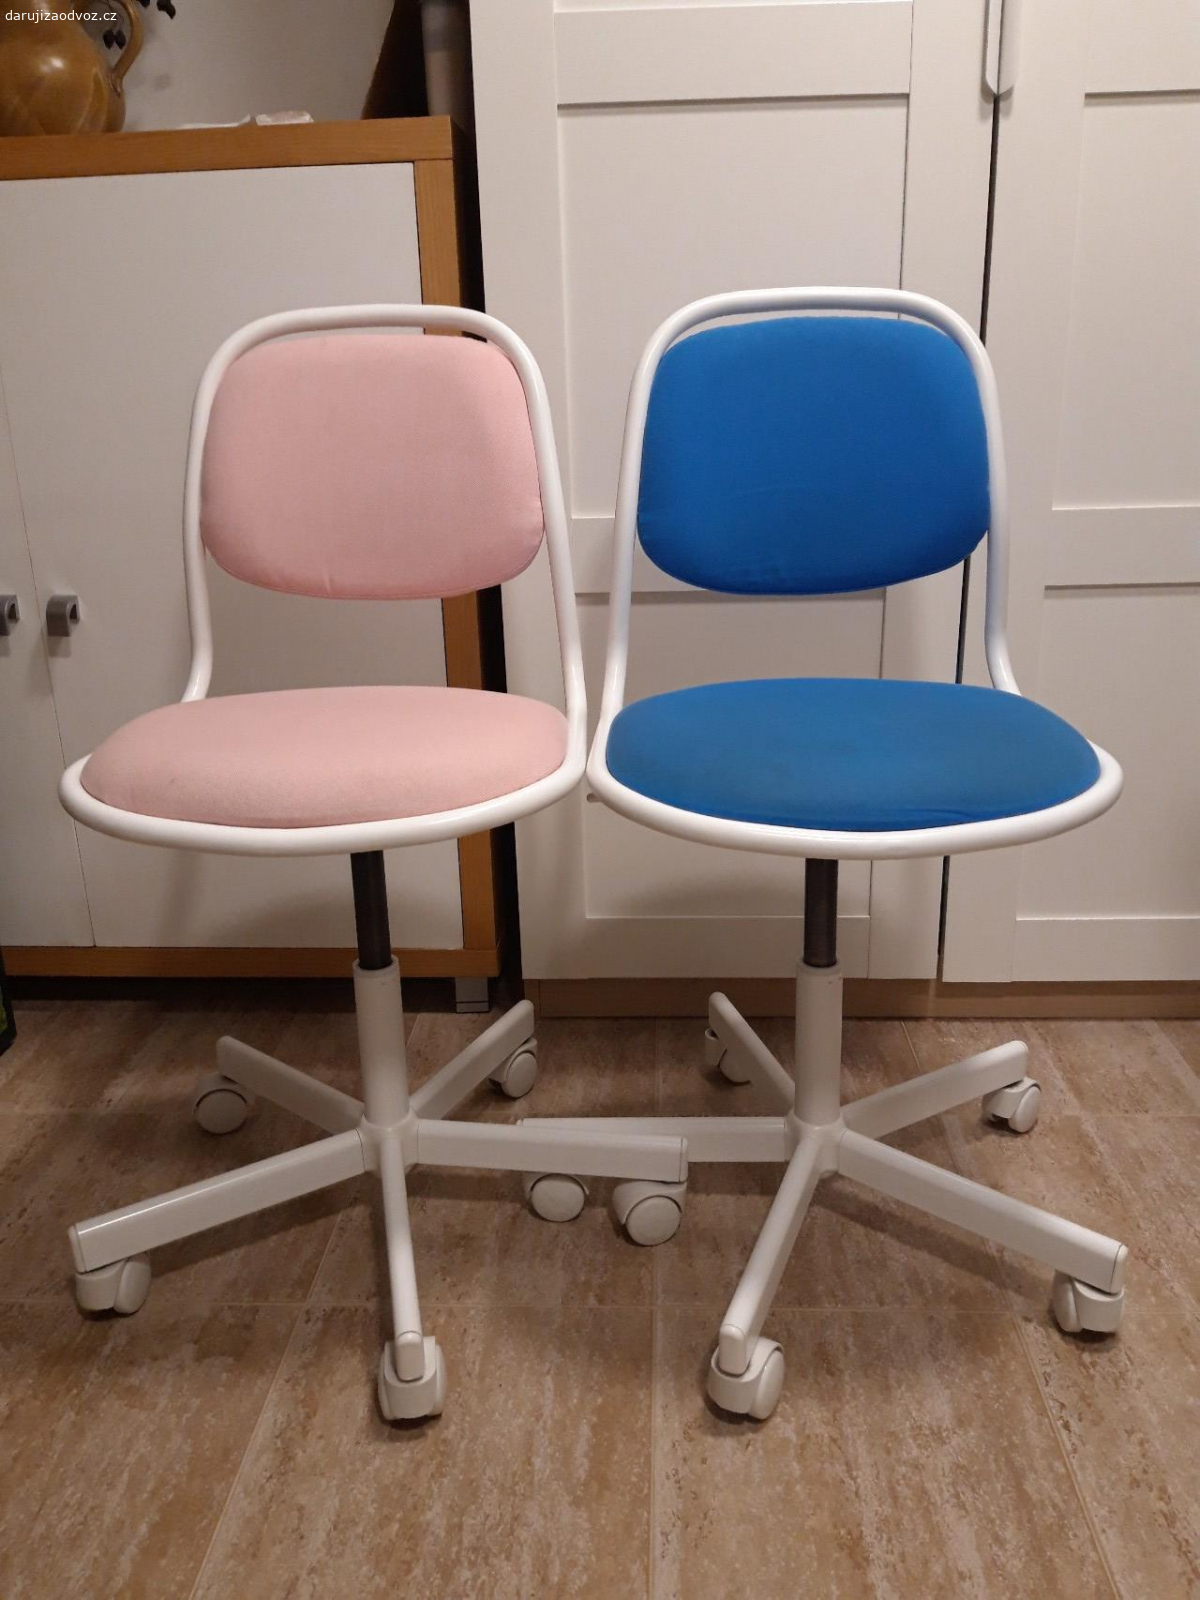 Dětské židle IKEA. 2 dětské židle pro malé školáčky - modrá a růžová